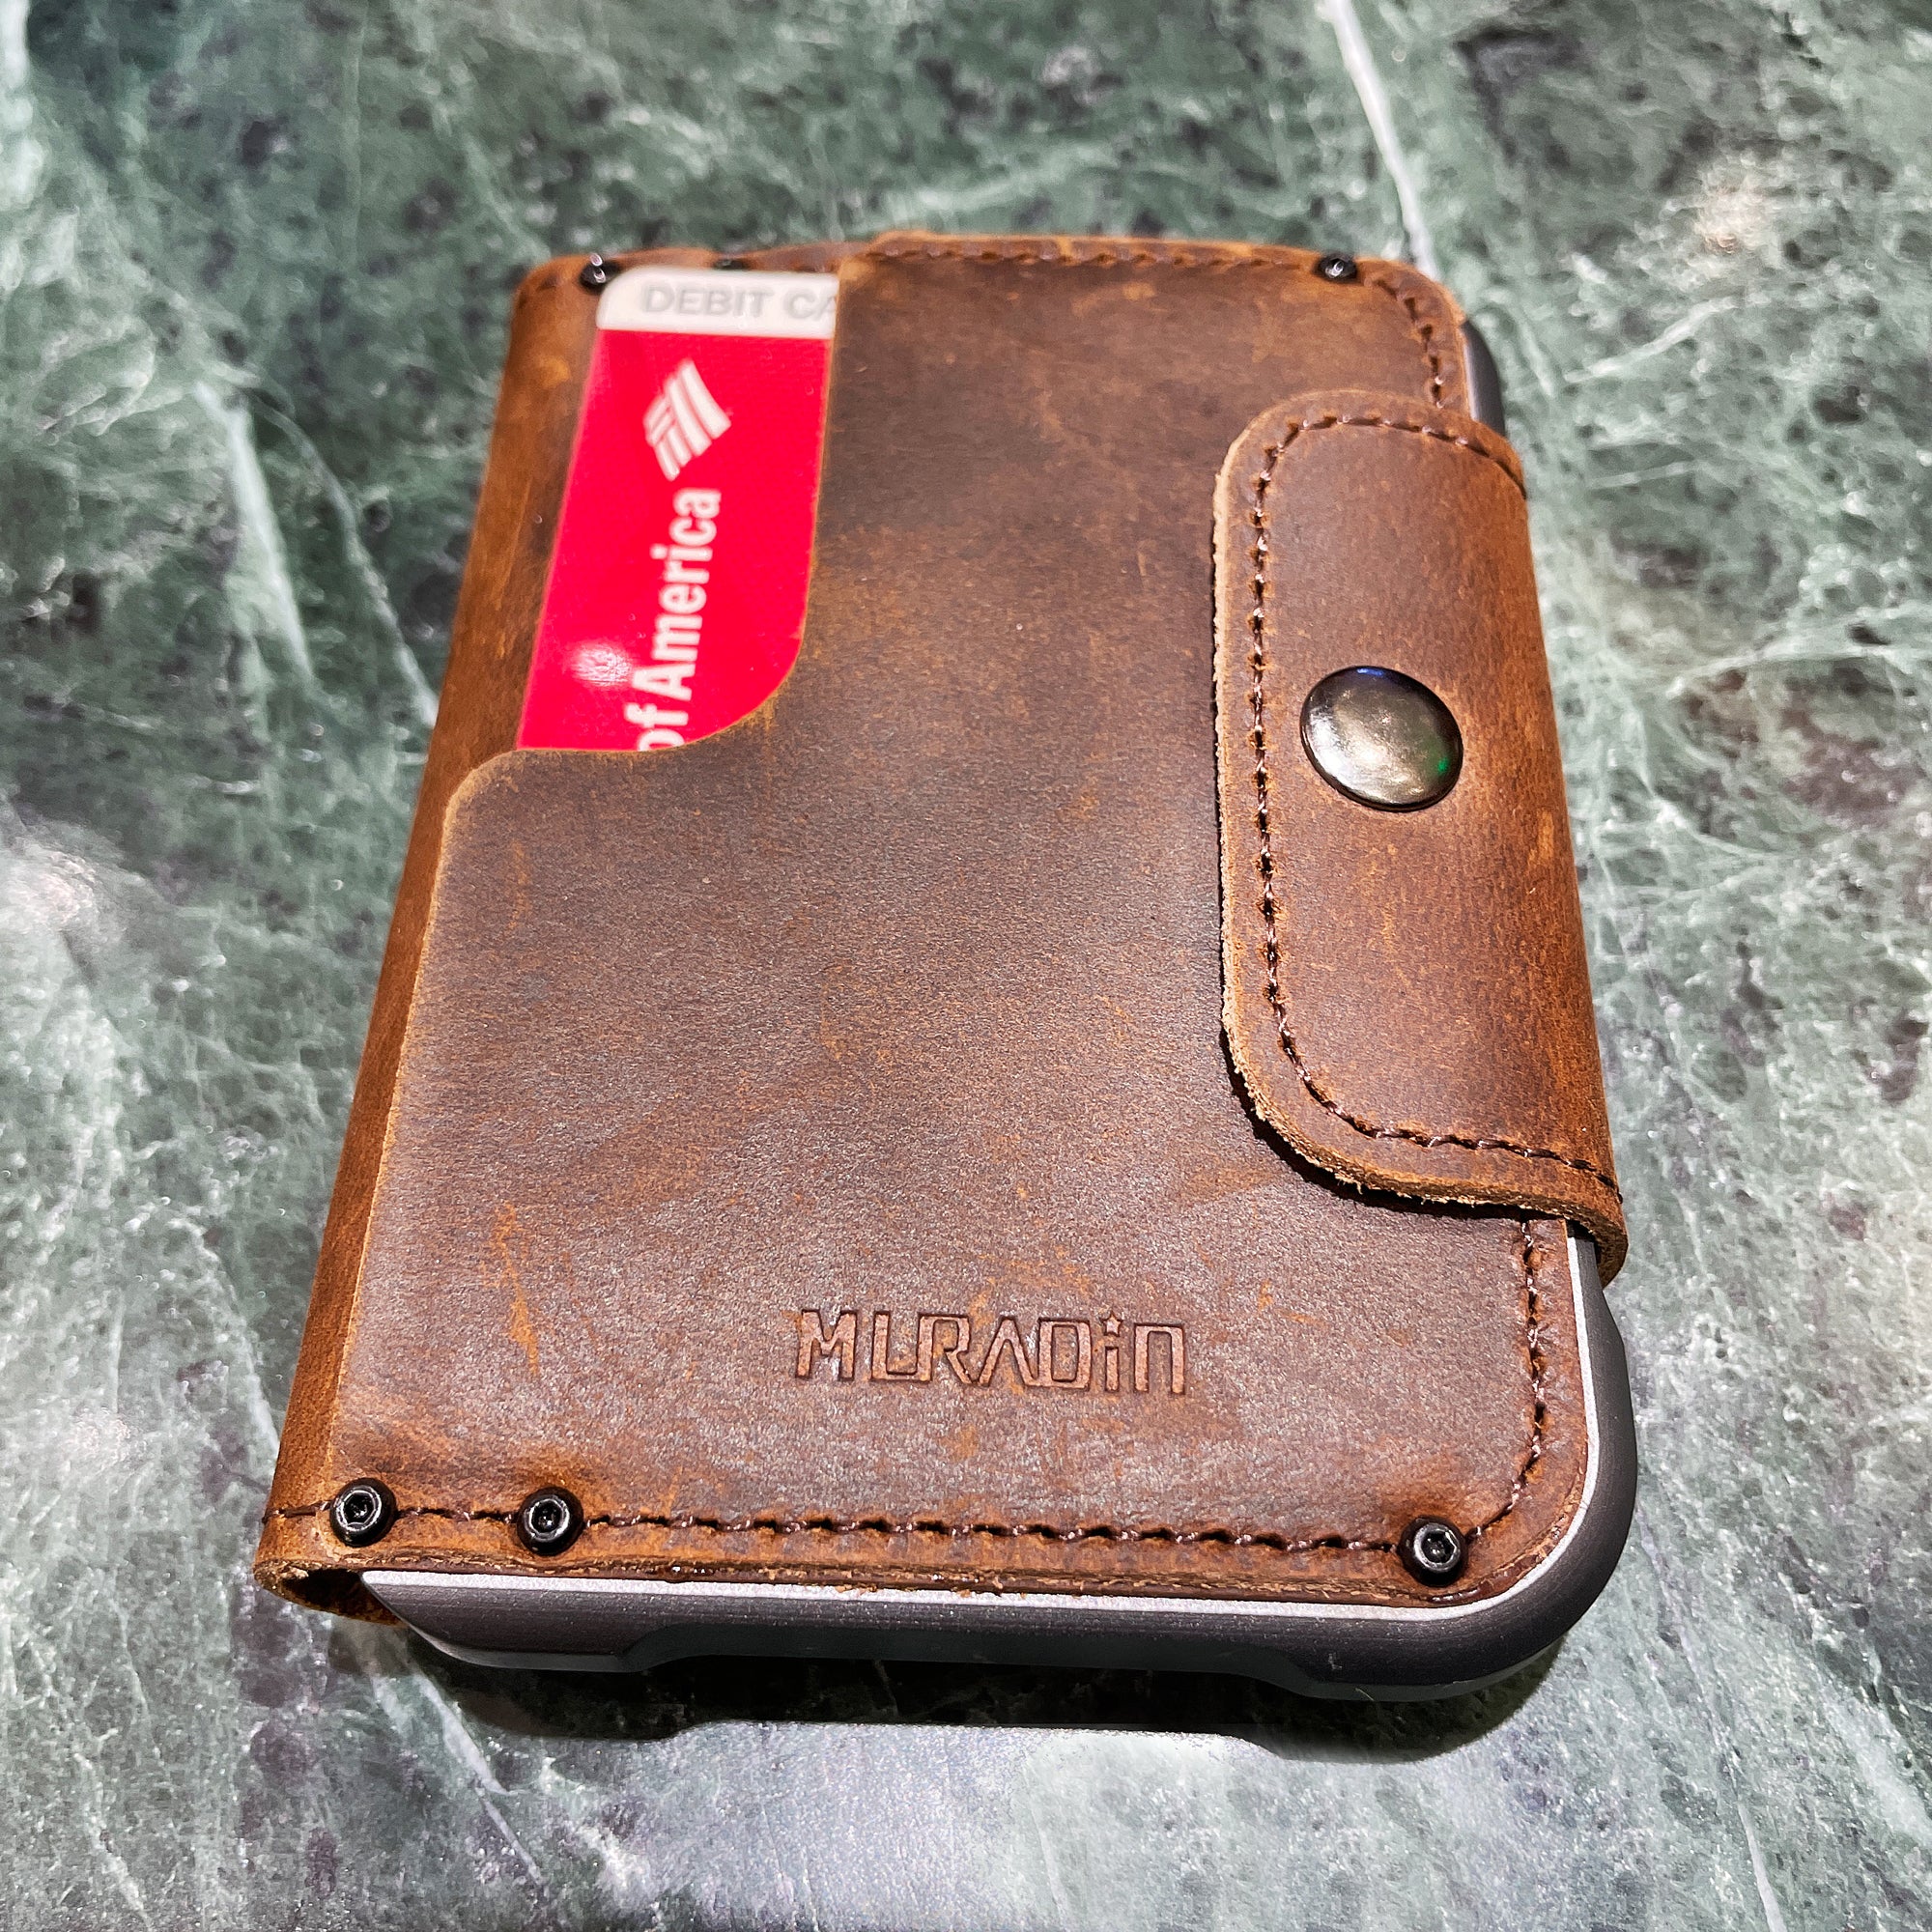 Aluminum wallet